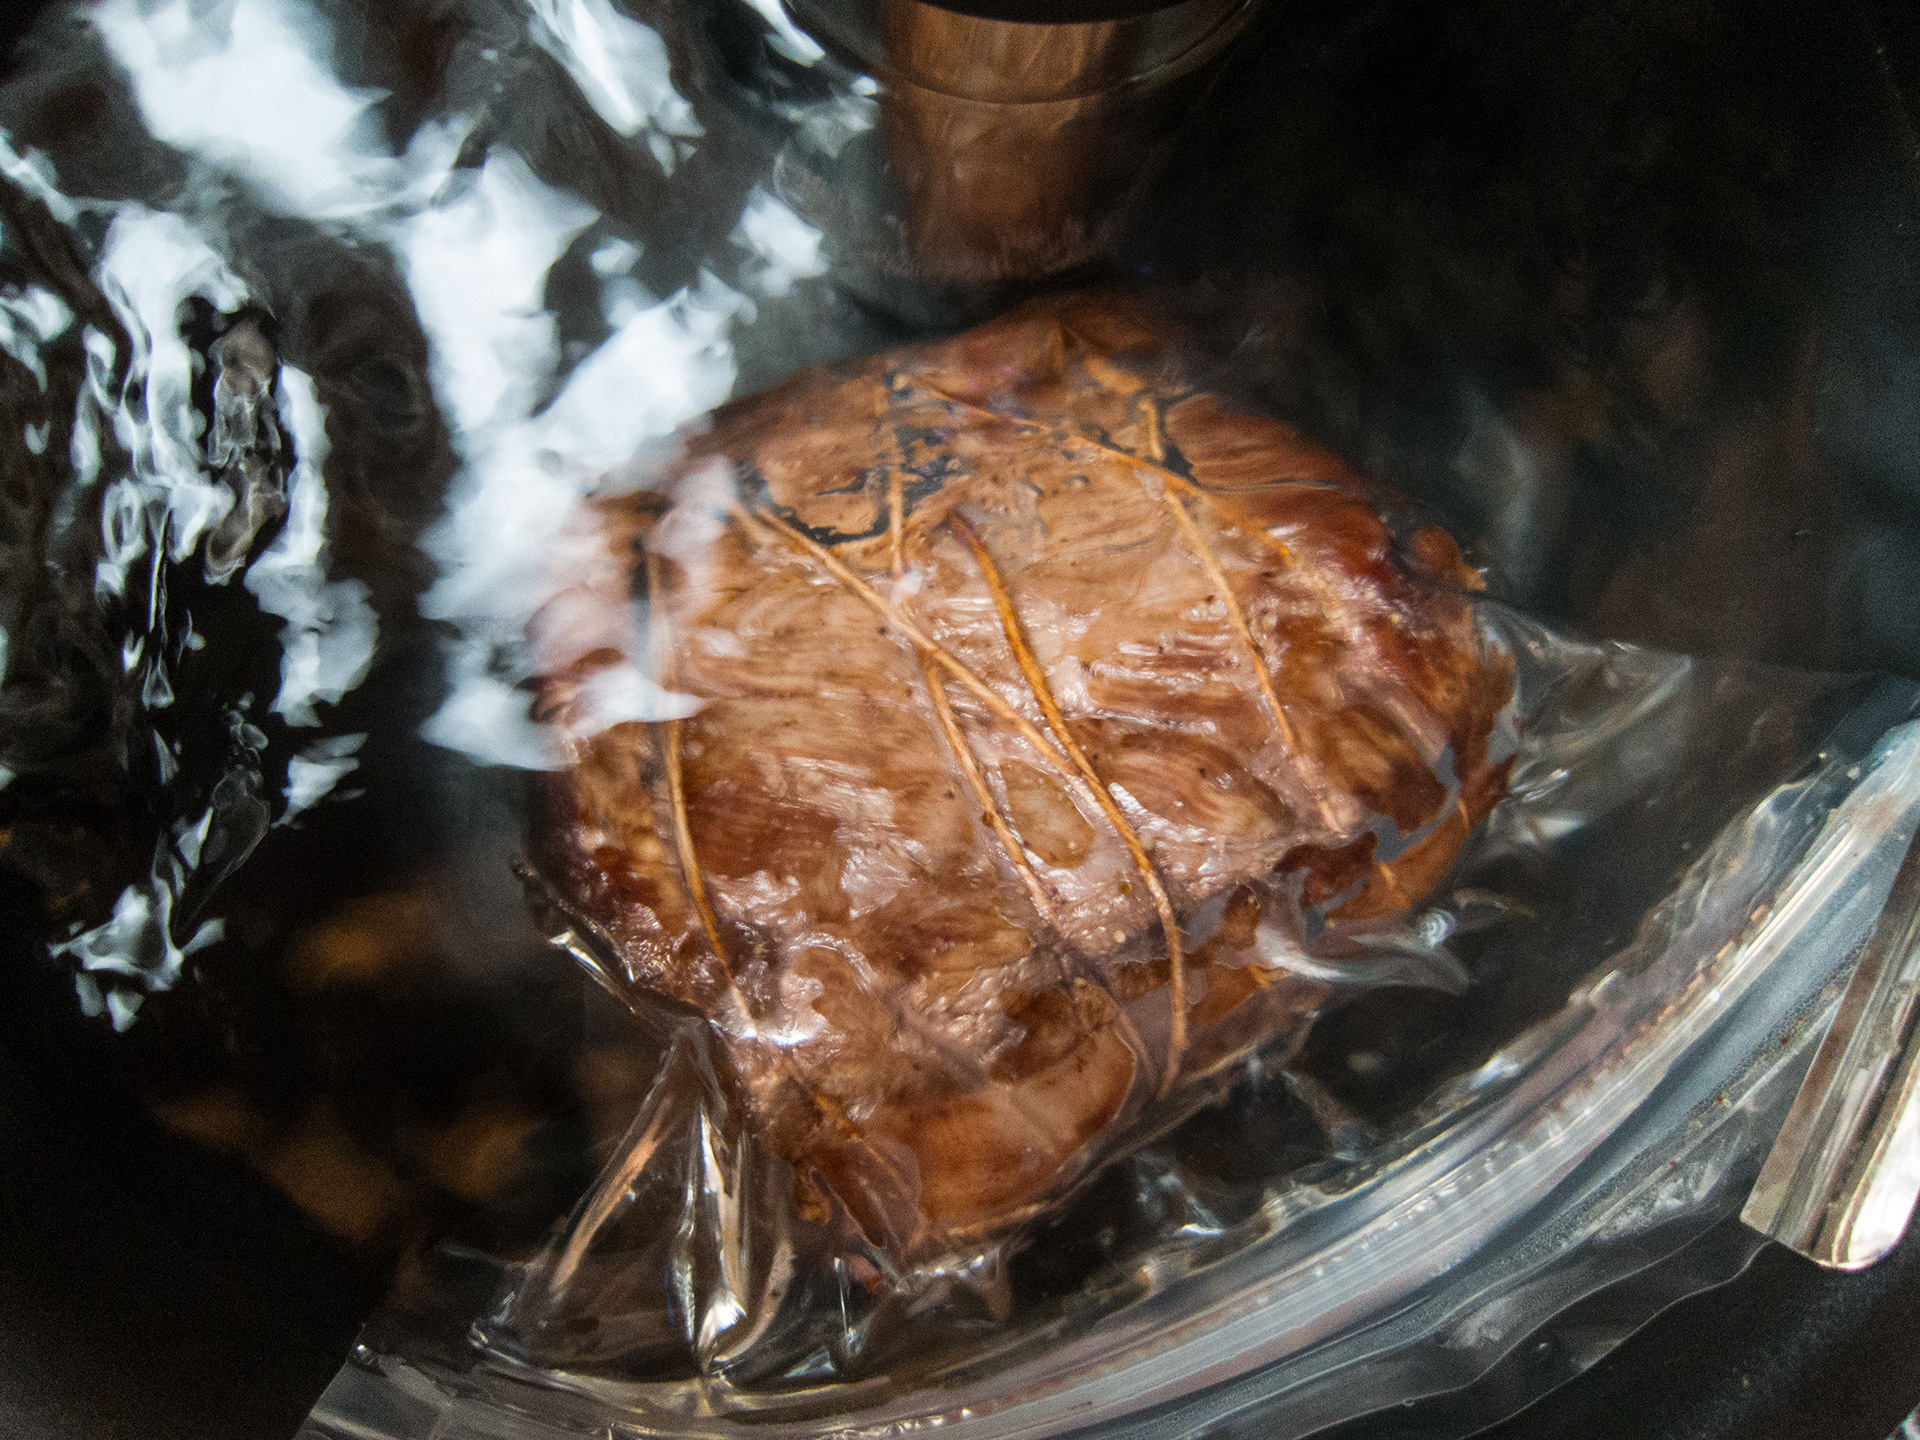 La cuisson (sous vide) à juste température - Comparaison d'un rôti de bœuf au four et cuit à juste température - Rôti en train de cuire sous vide